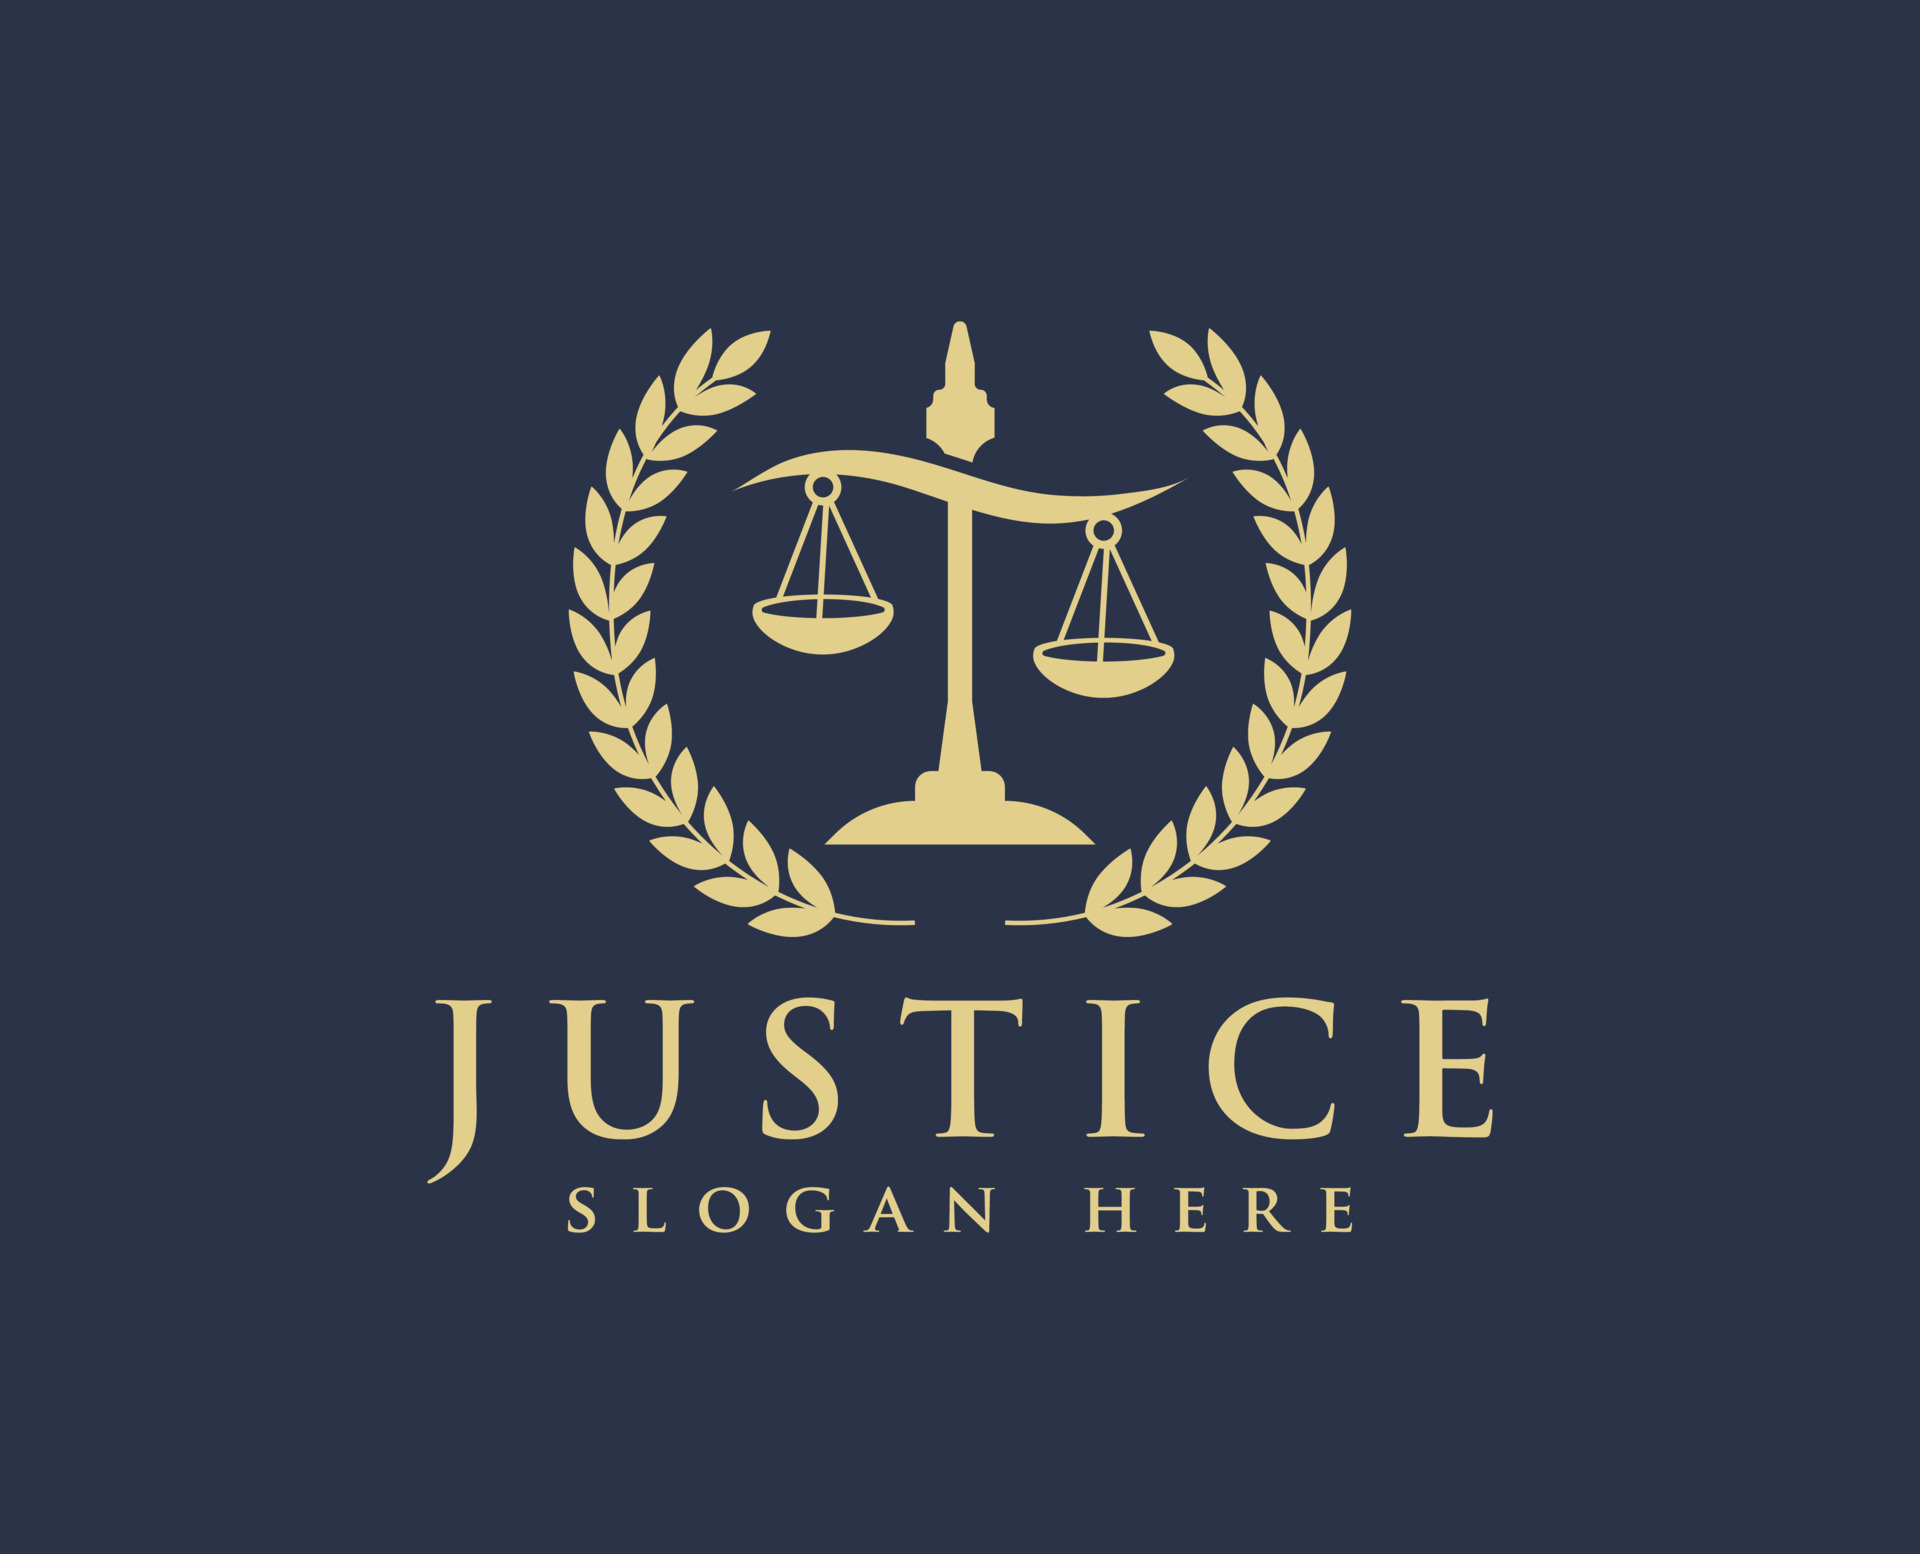 Law Logos Design - vrogue.co